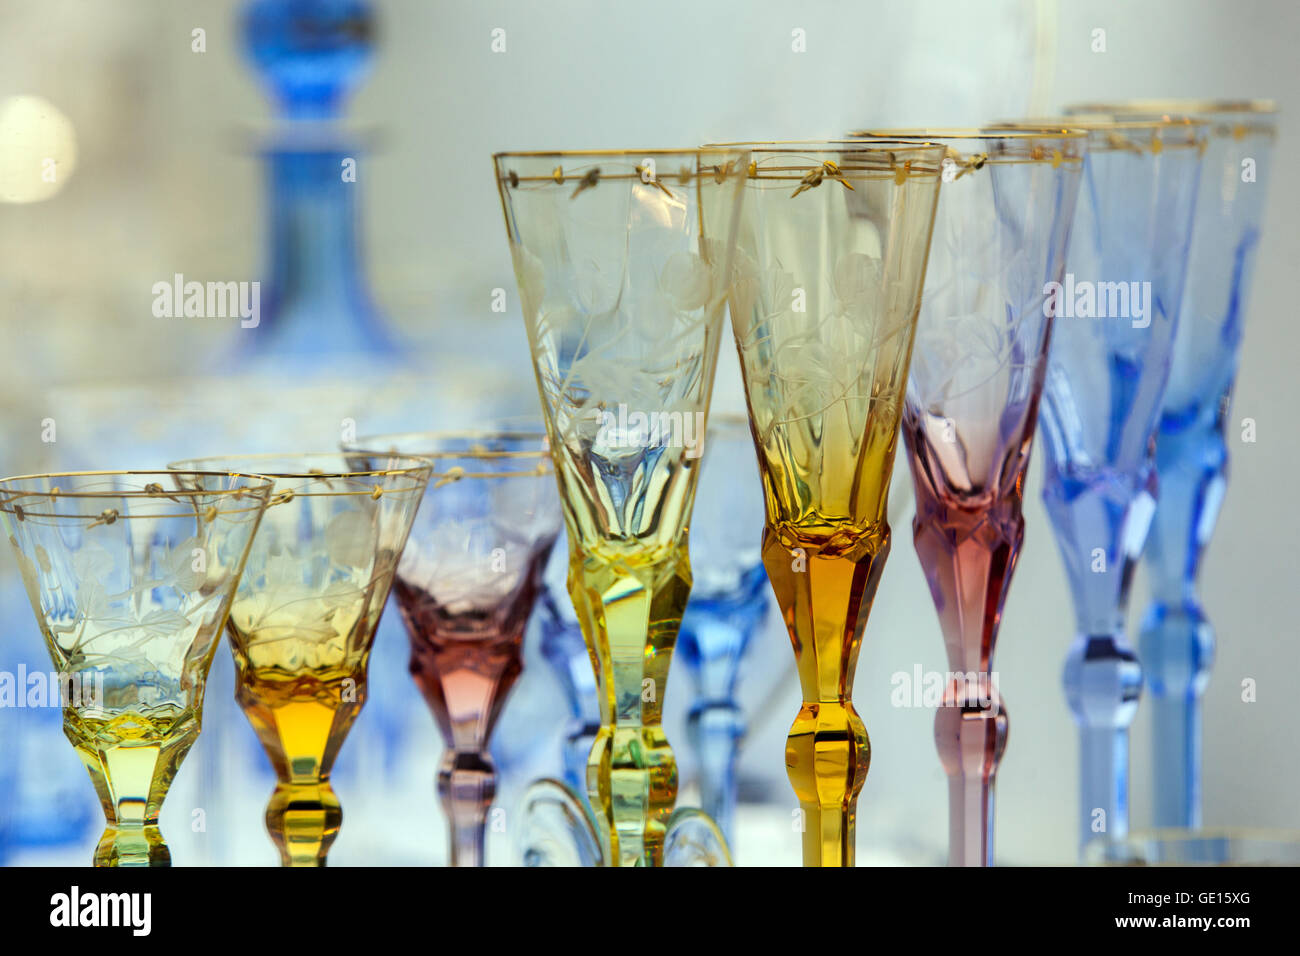 Moser glassworks Karlovy Vary Bohemia crystal glass Czech Republic Glassware  Stock Photo - Alamy